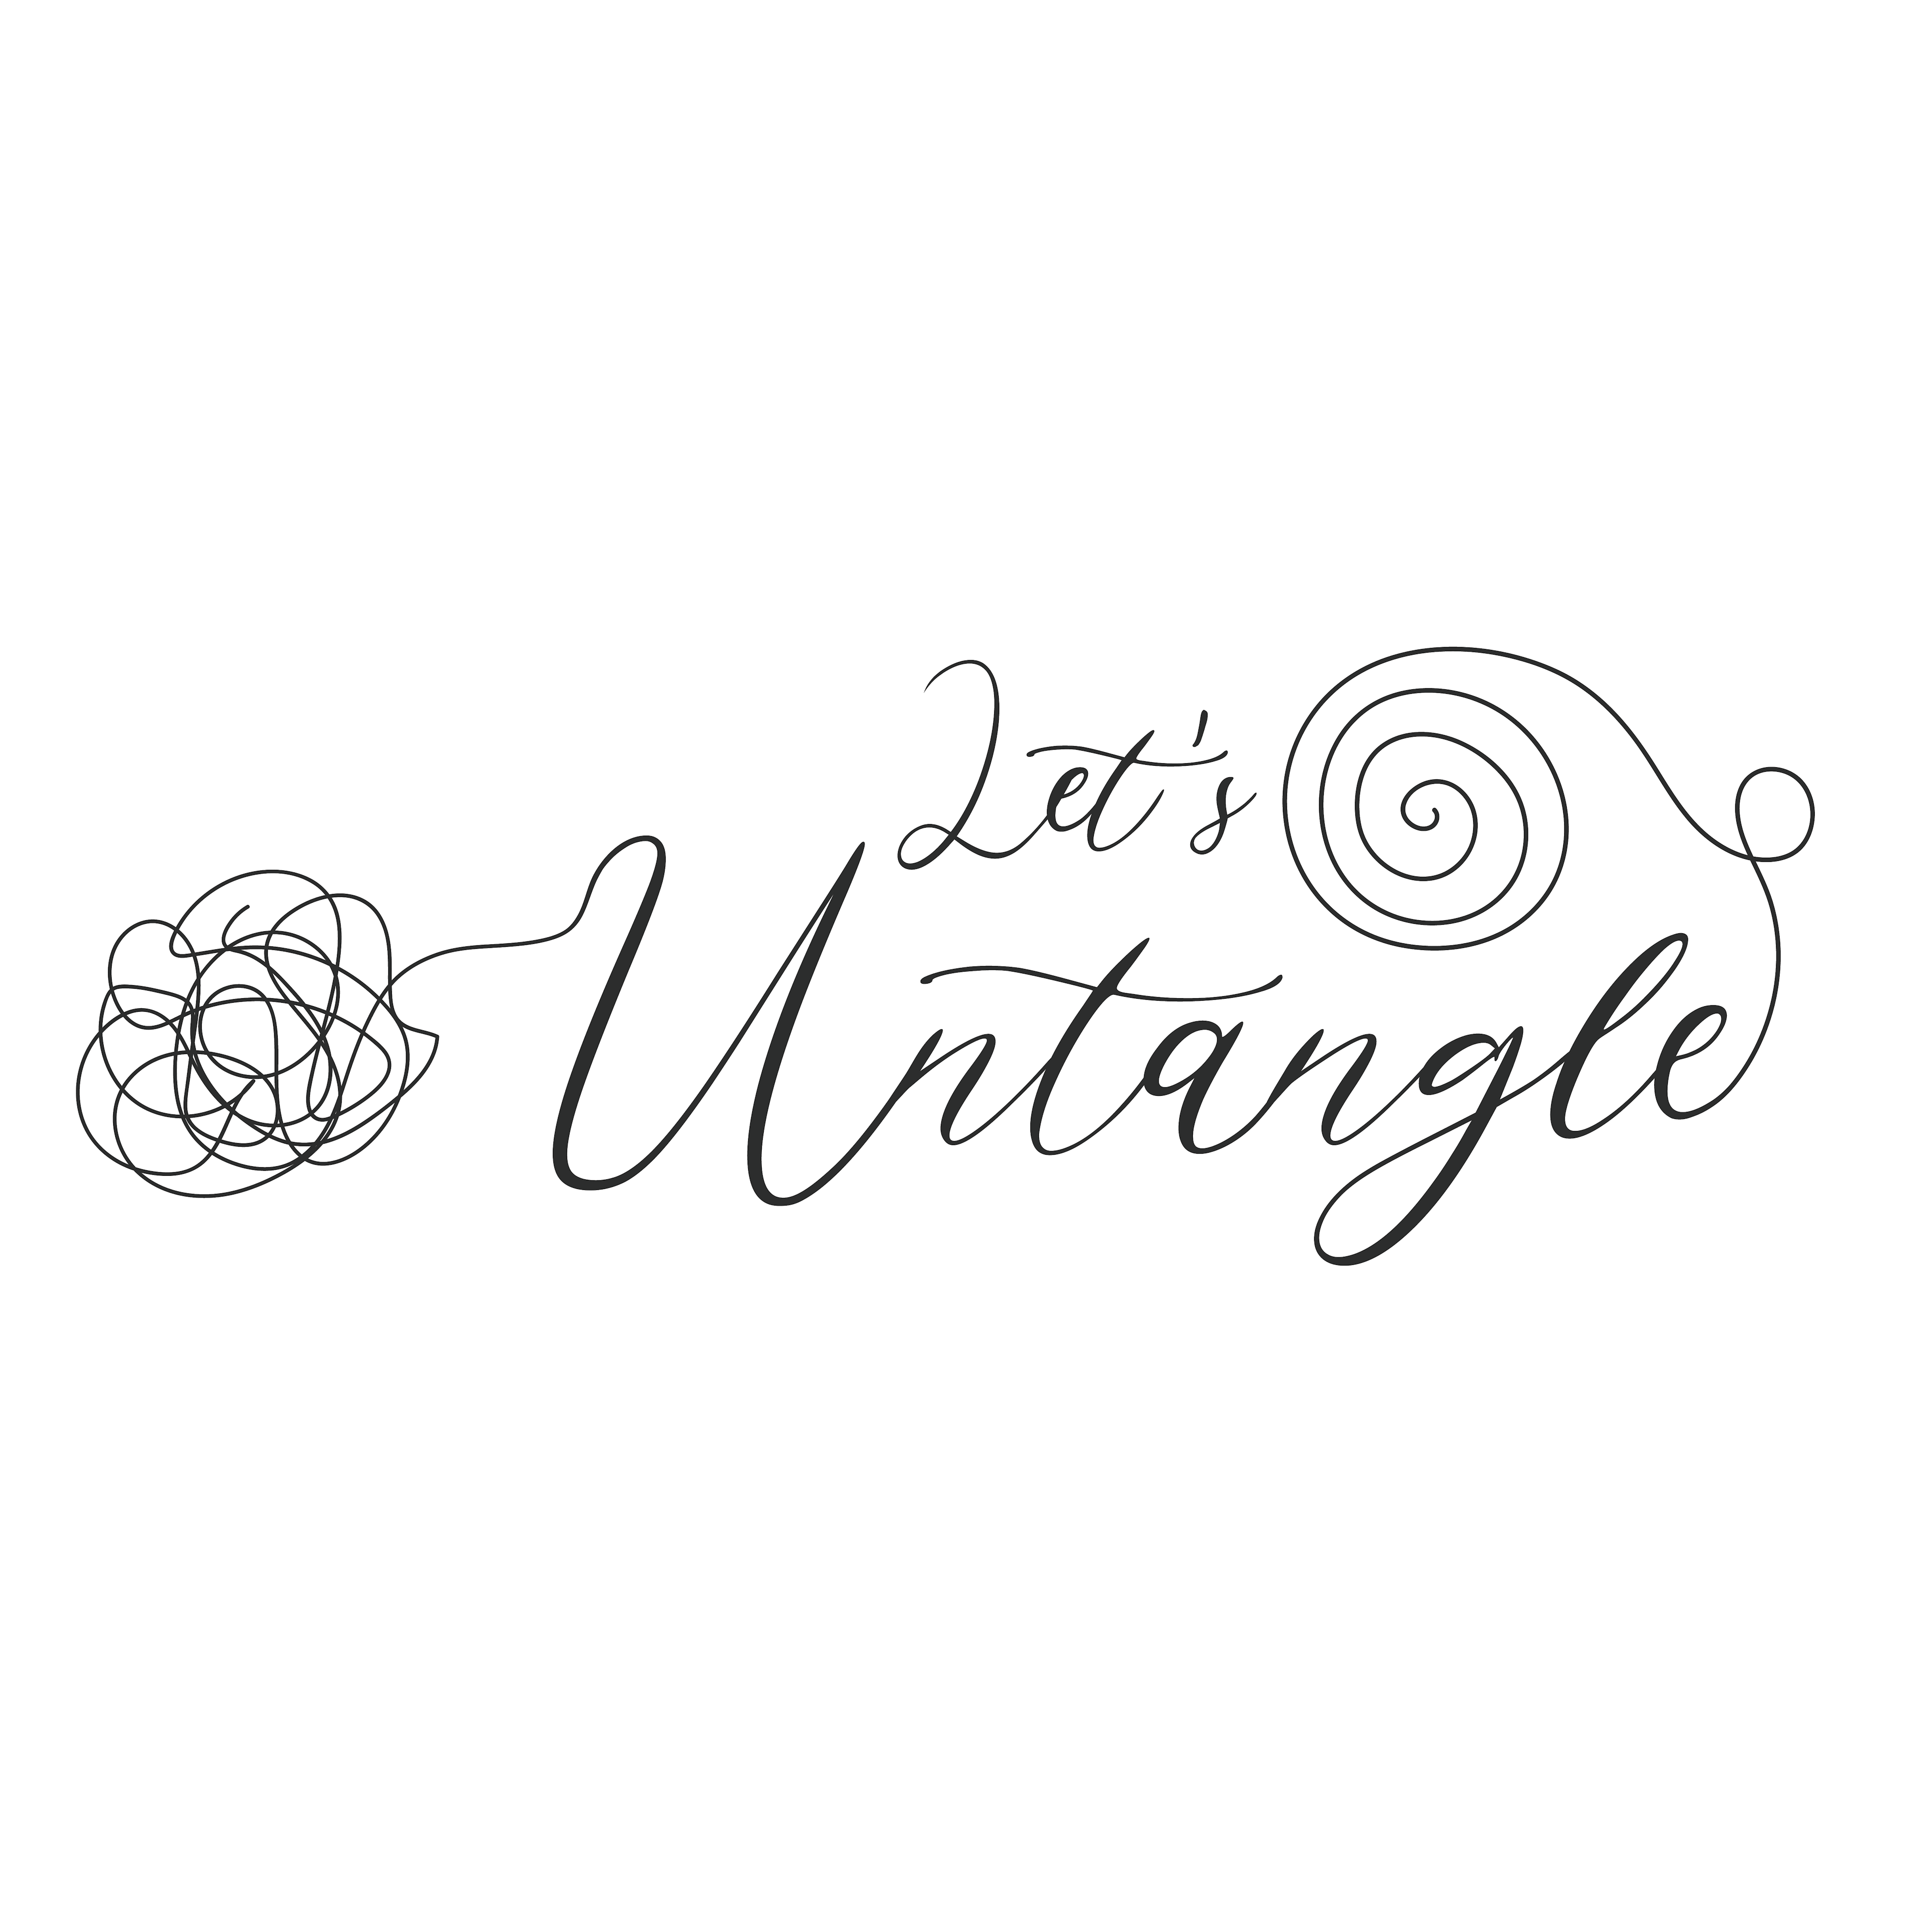 lets-untangle-logo-01-1695688532